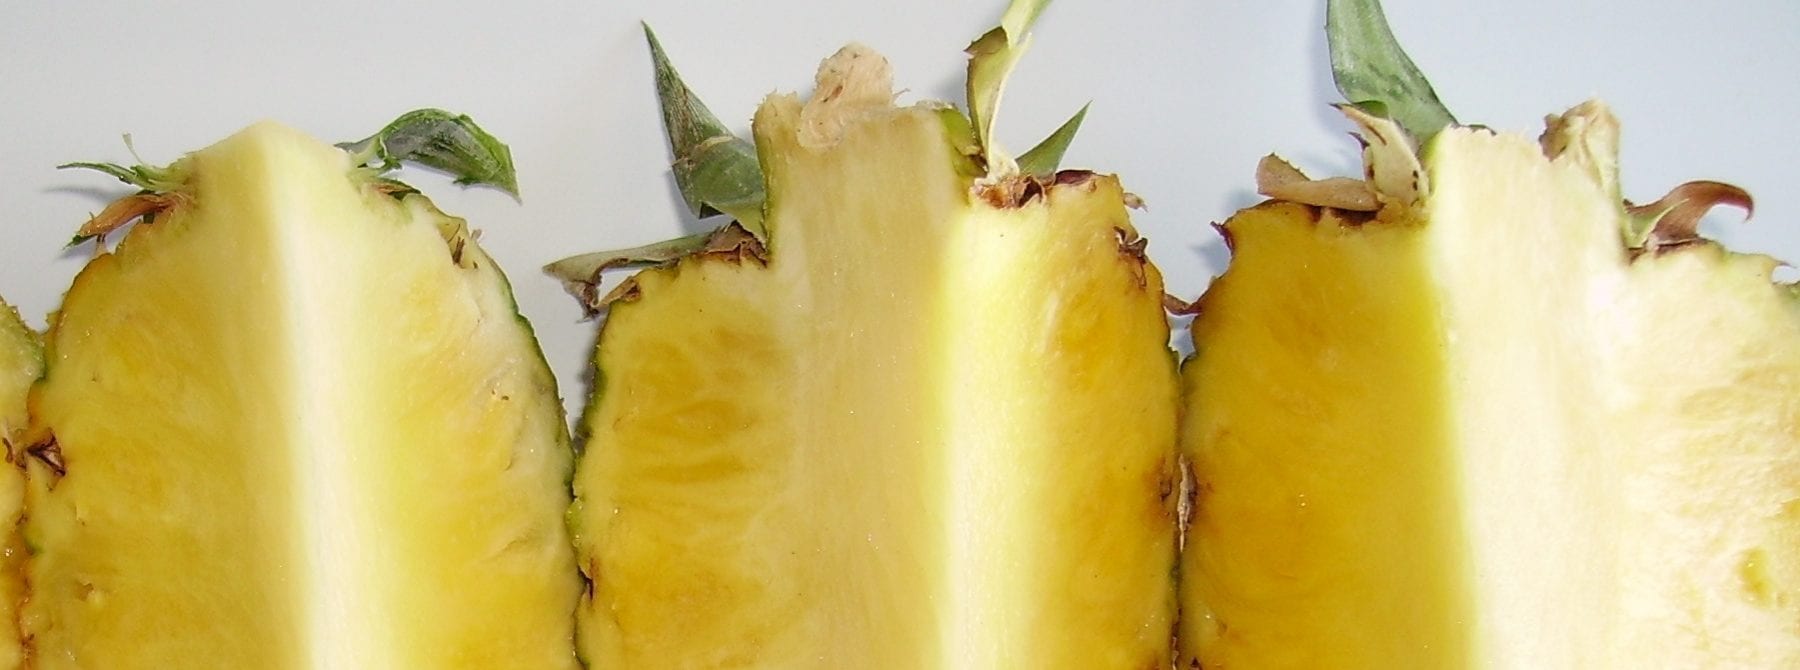 Pourquoi l’ananas est-il recommandé dans beaucoup de régimes ?